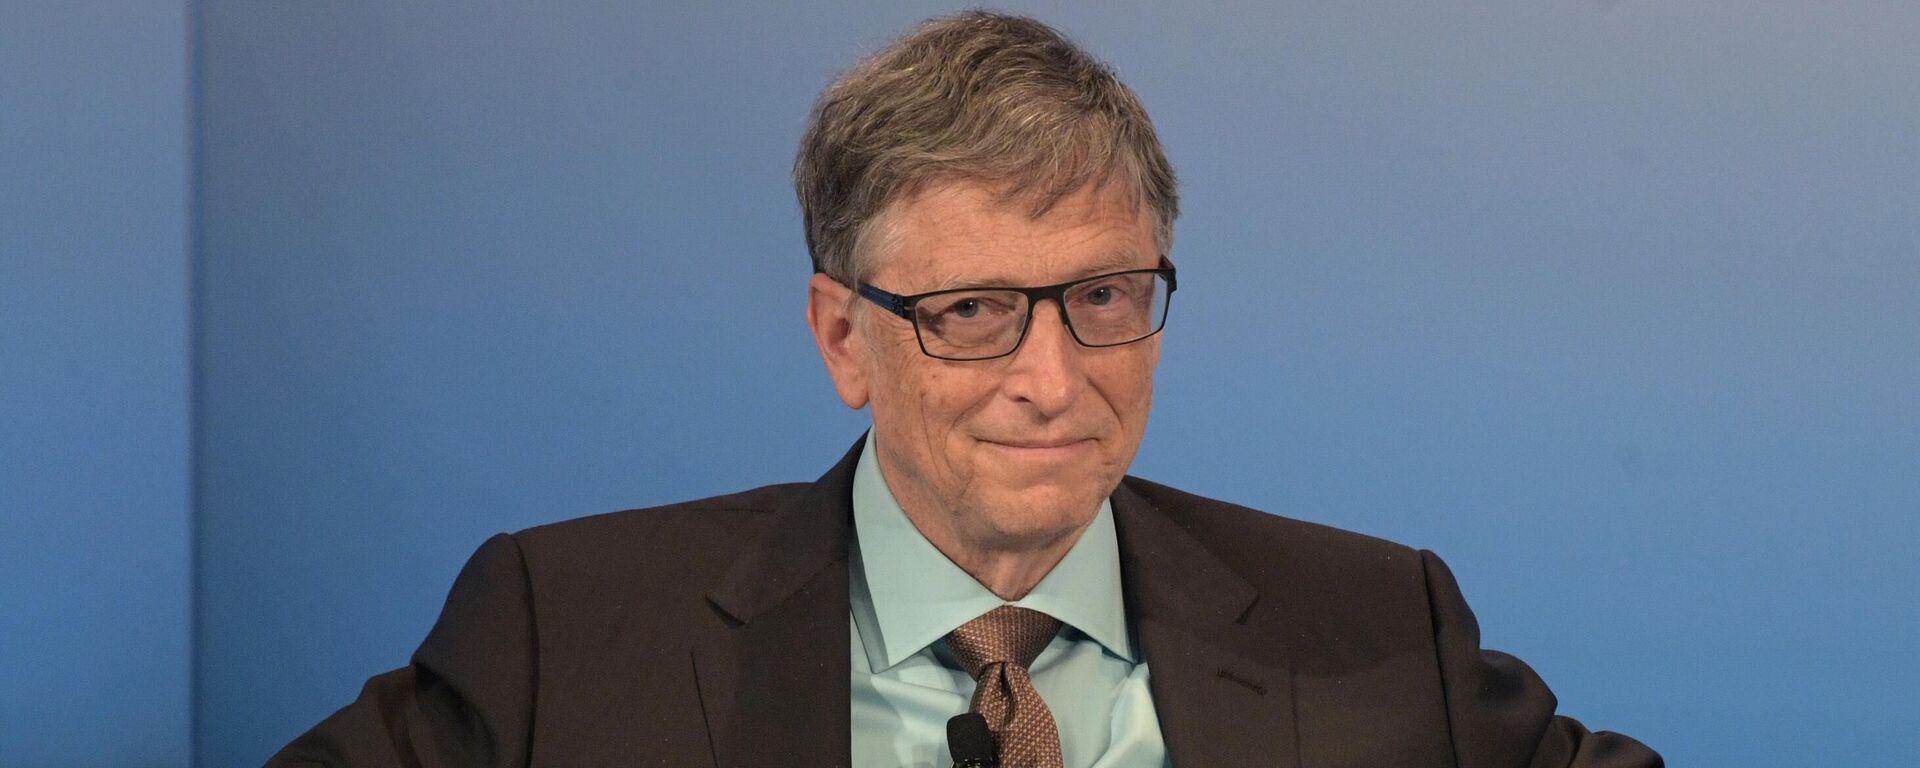 Бывший генеральный директор Microsoft Билл Гейтс, архивное фото - Sputnik Lietuva, 1920, 28.12.2021